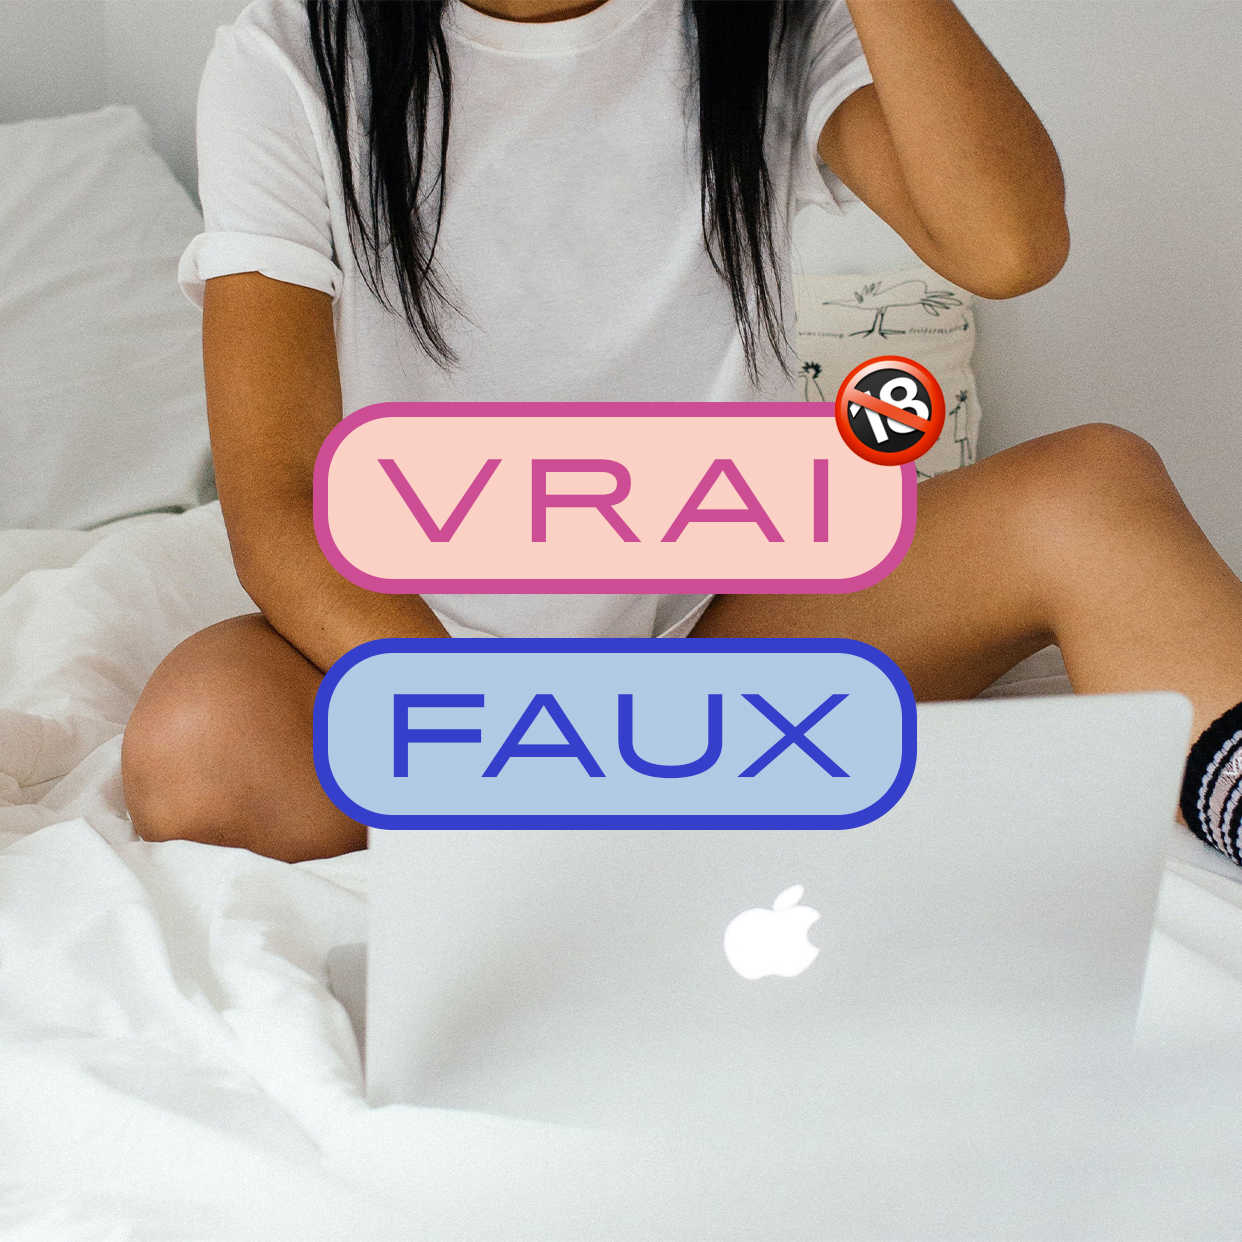 Le VRAI/FAUX (et le pourquoi pas) du porno